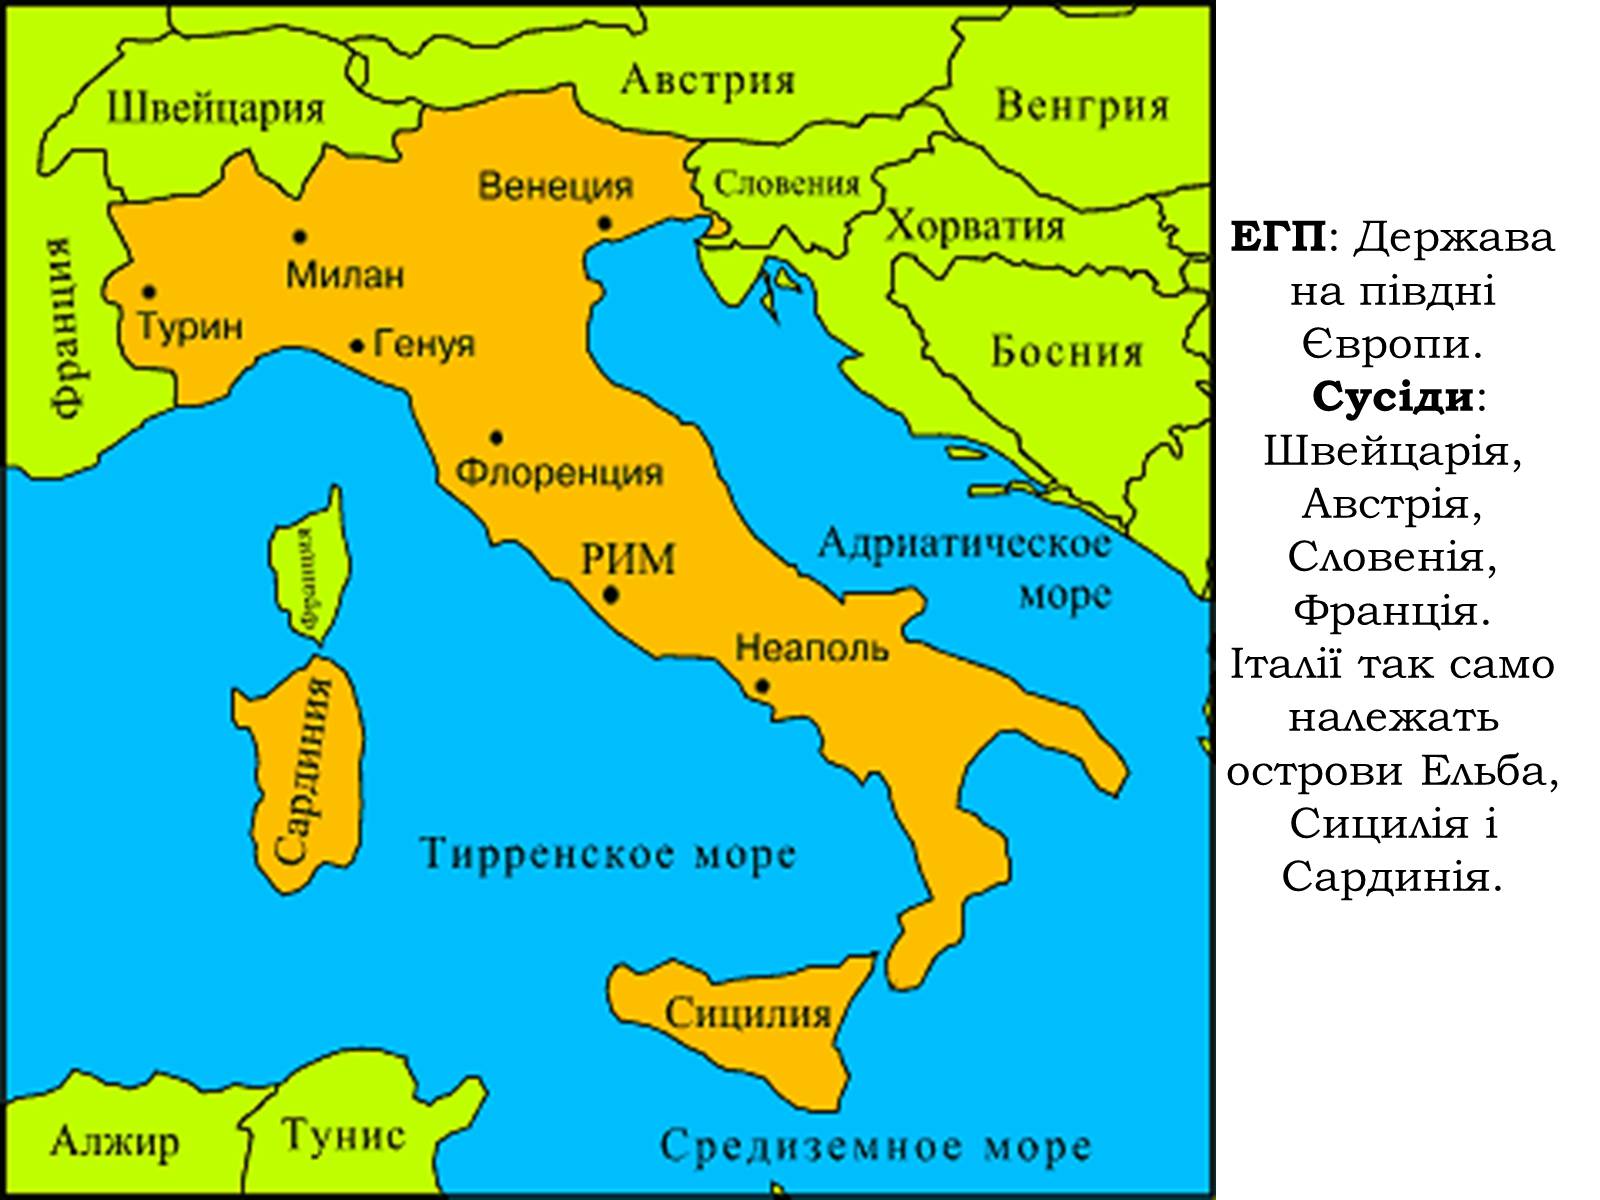 Где на карте располагается рим. С какими странами граничит Италия на карте политической. Границы Италии на карте. Соседи Италии на карте. Карта Италии с соседними государствами.